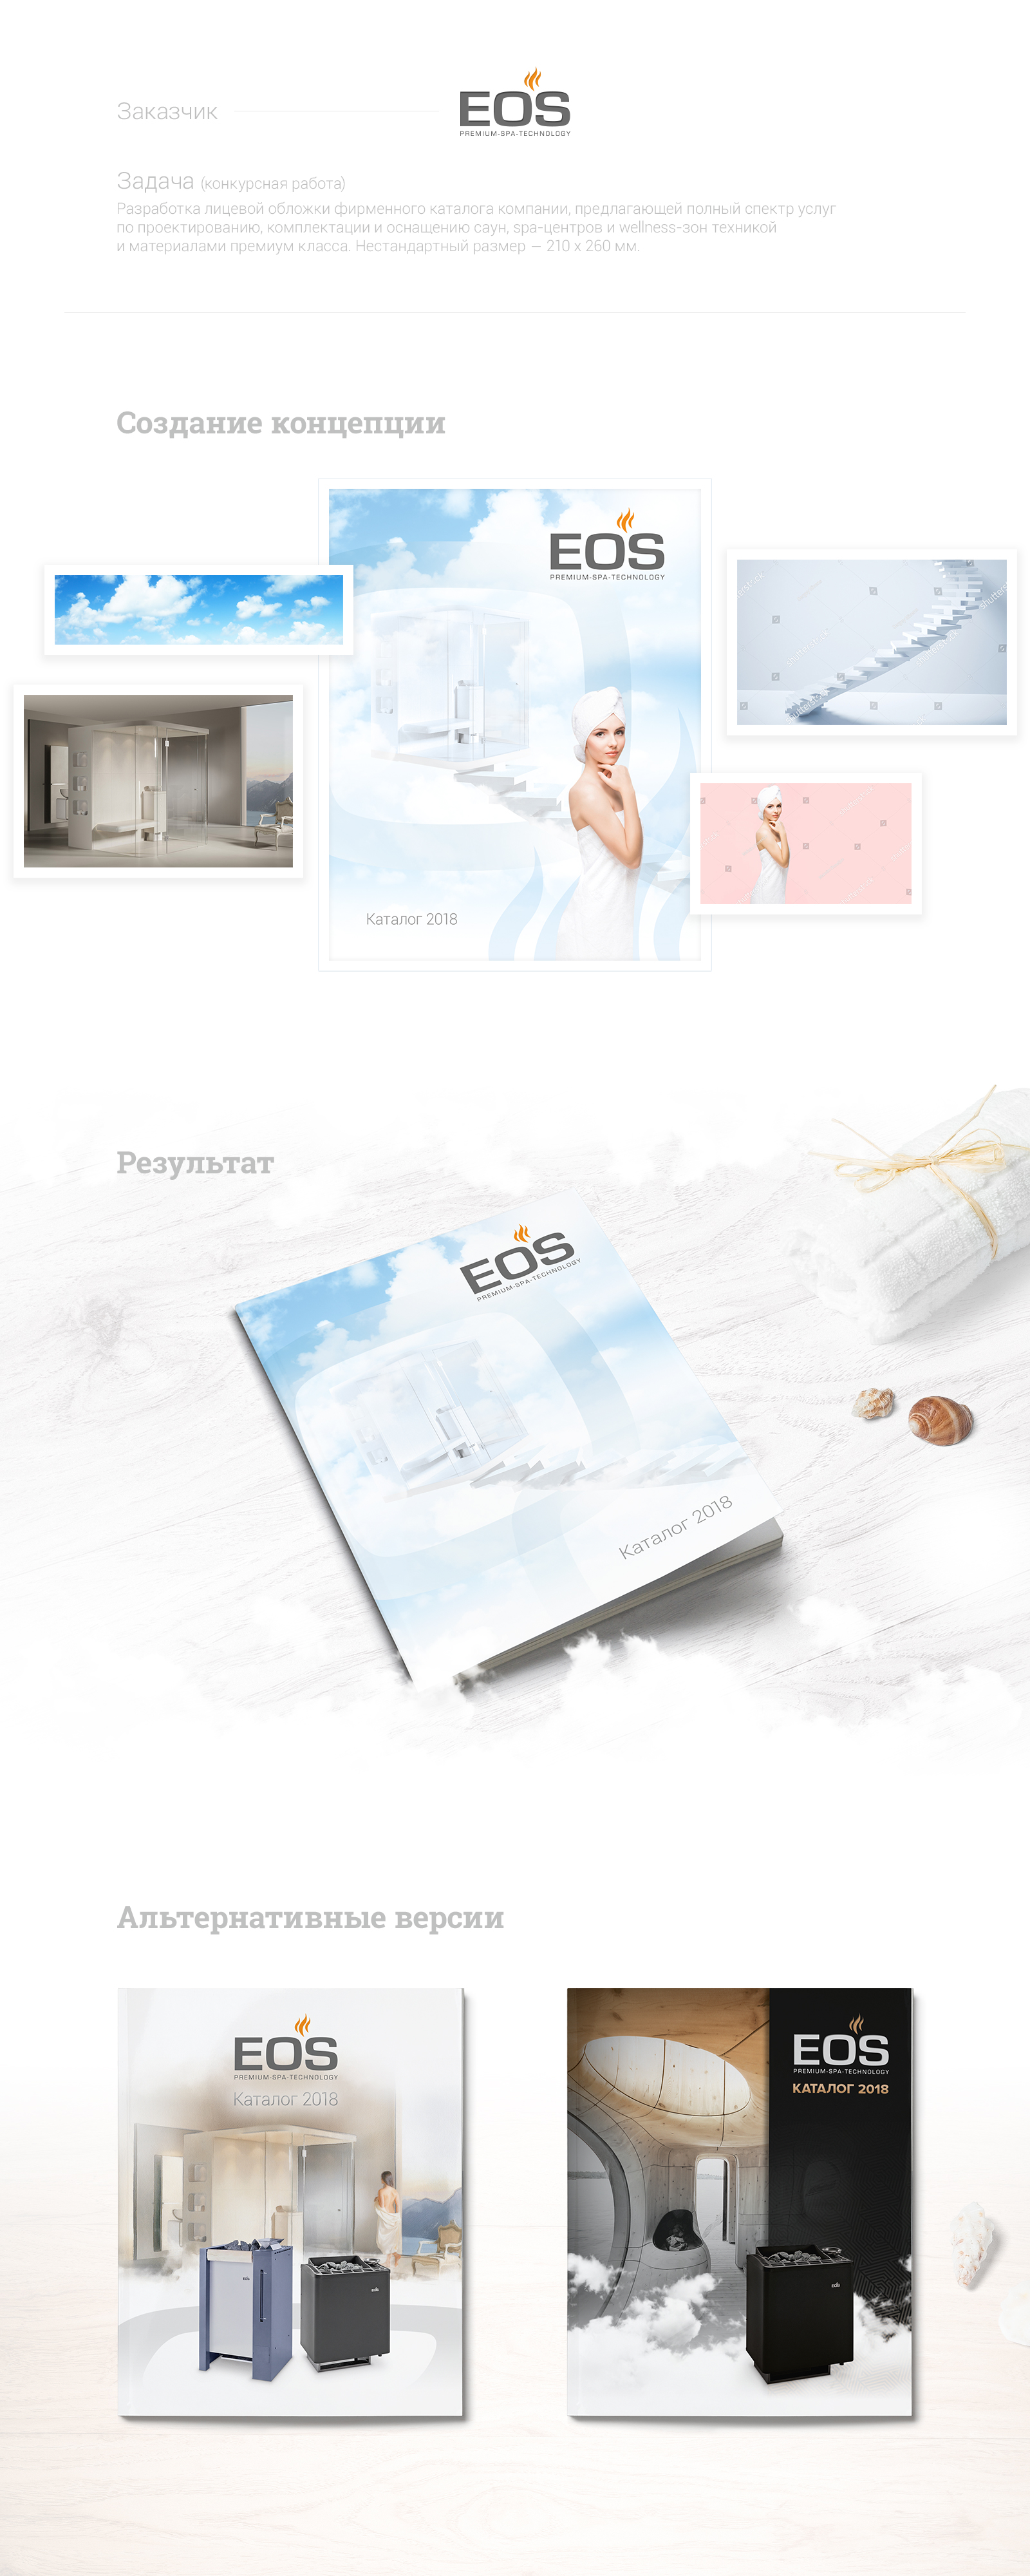 EOS-fet3000-preview_1600х4000.jpg